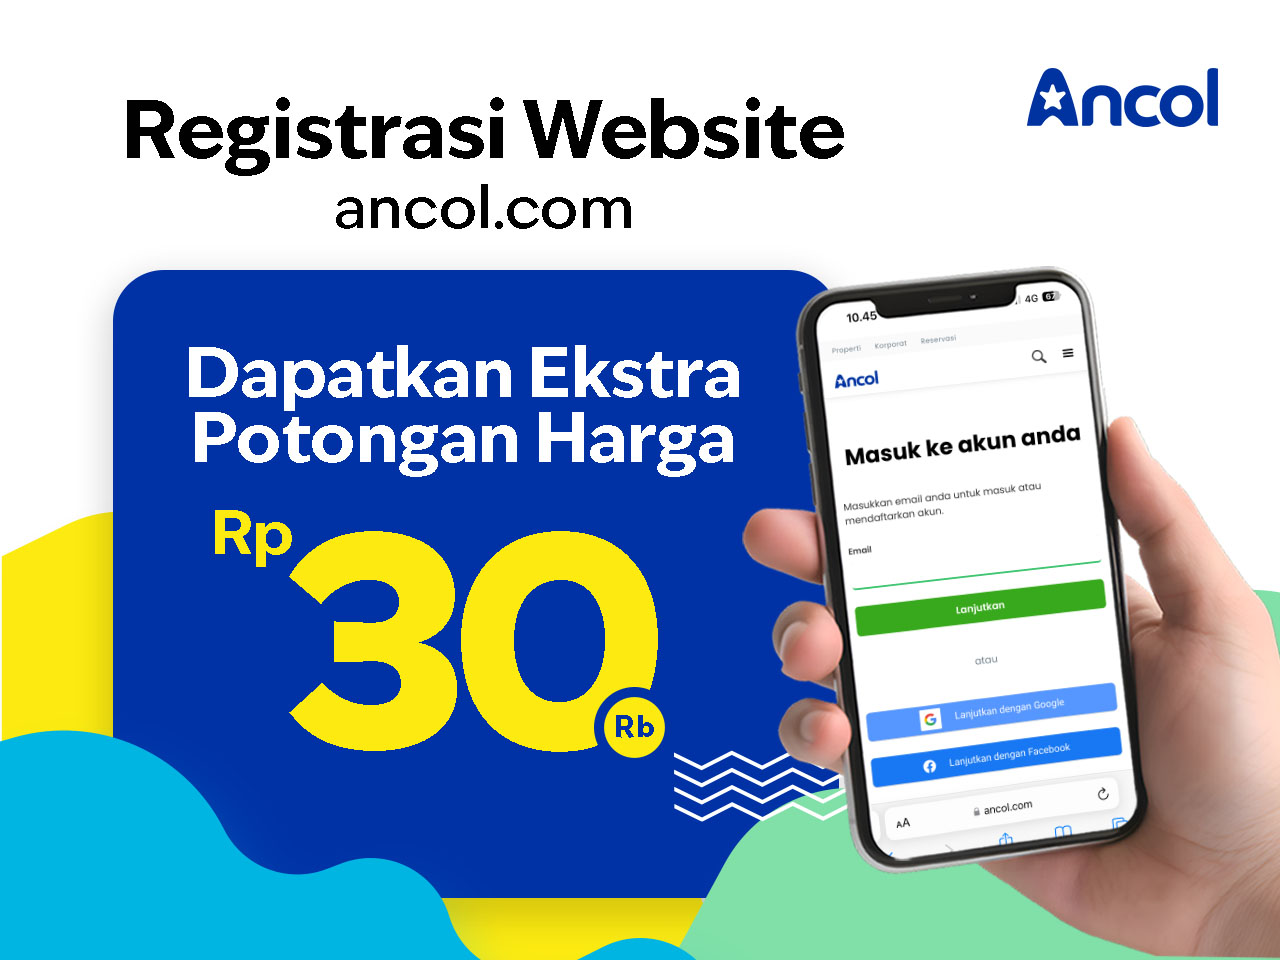 Registrasi Website Ancol dan Dapatkan Ekstra Potongan Harga Tiket